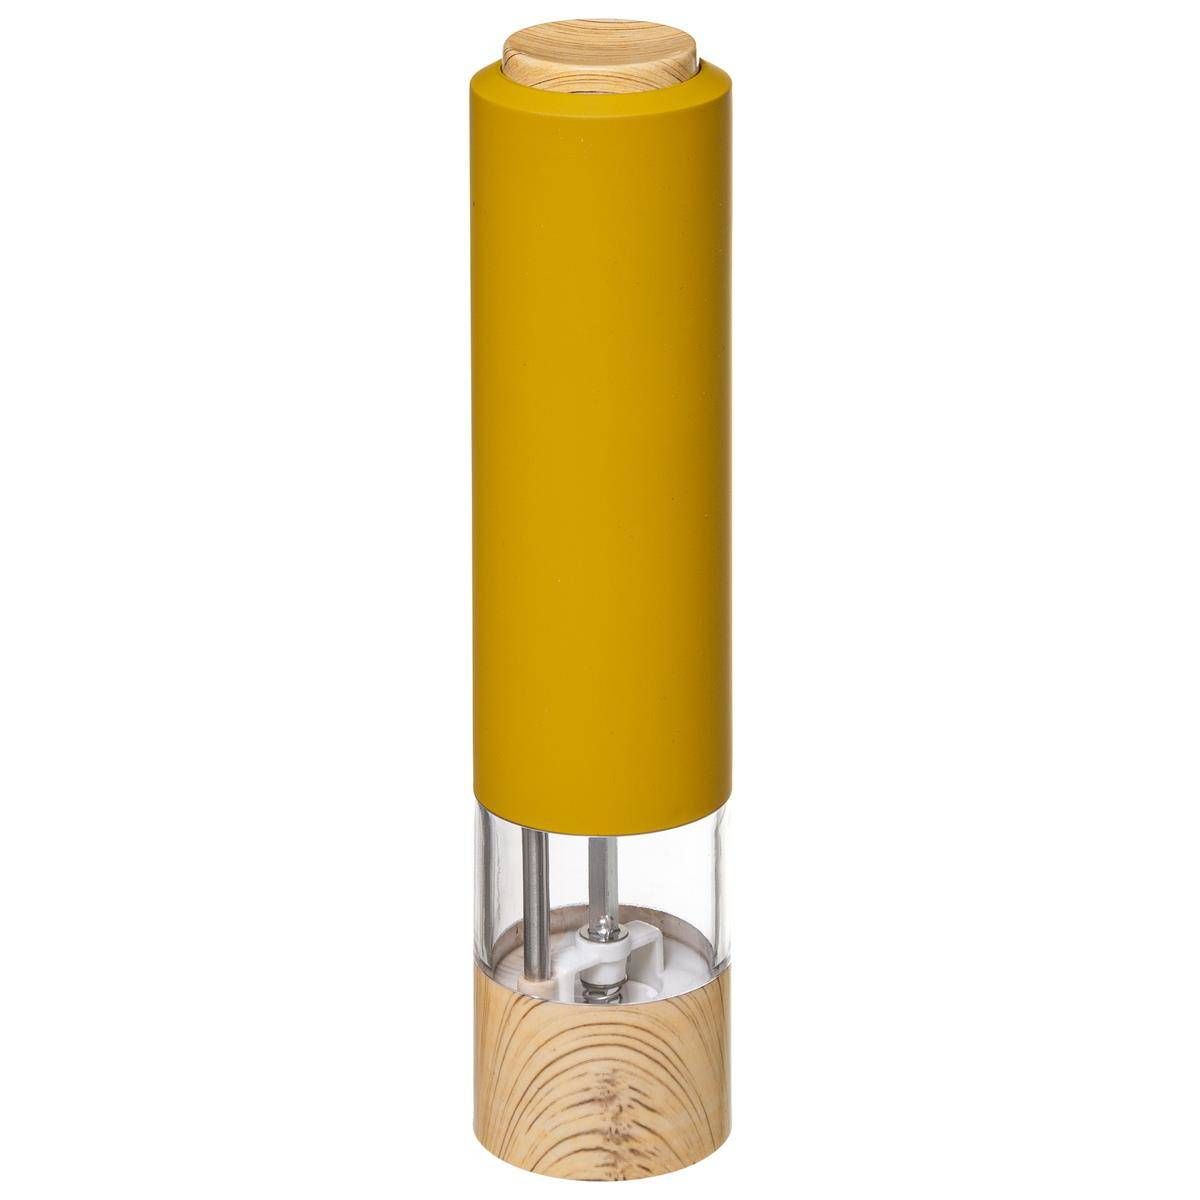 5five Simply Smart Elektrický mlýnek na sůl a pepř, žlutý - EMAKO.CZ s.r.o.